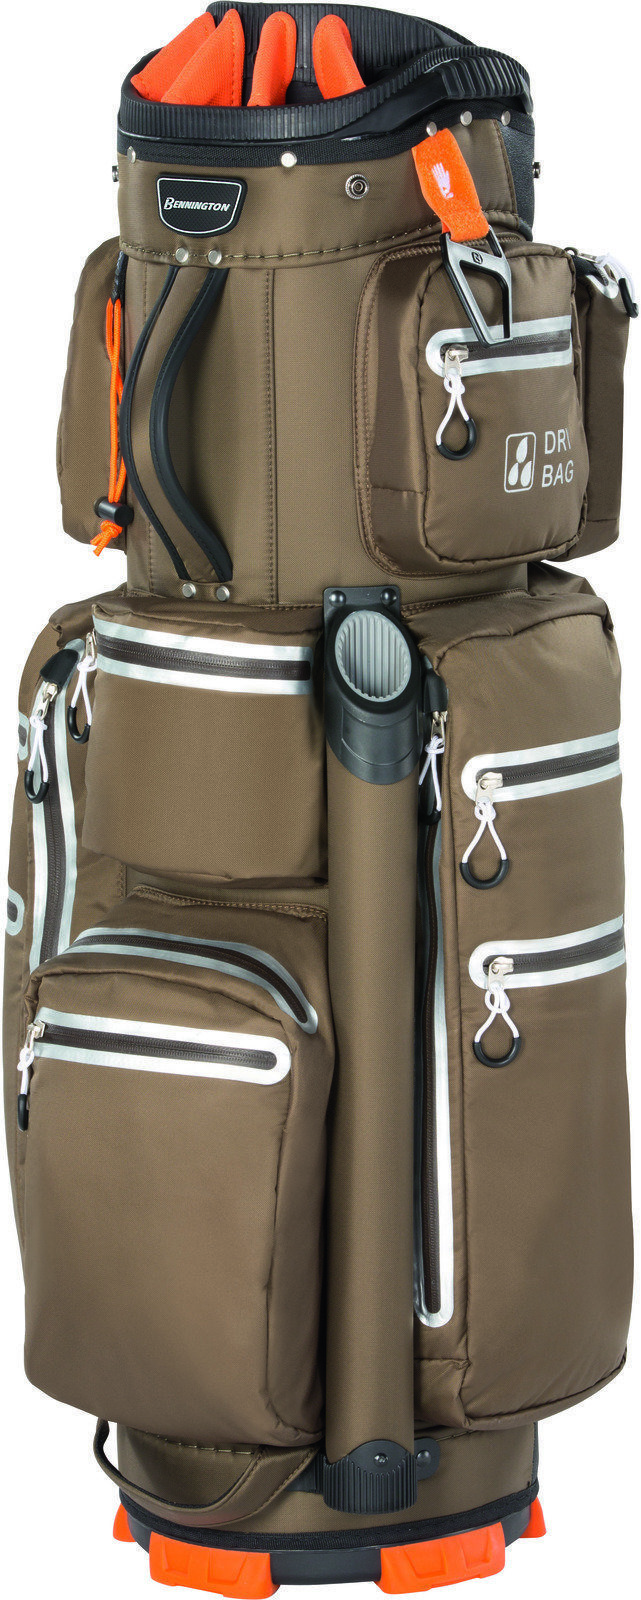 Cart Bag Bennington FO 15 Way Waterproof Espresso Cart Bag